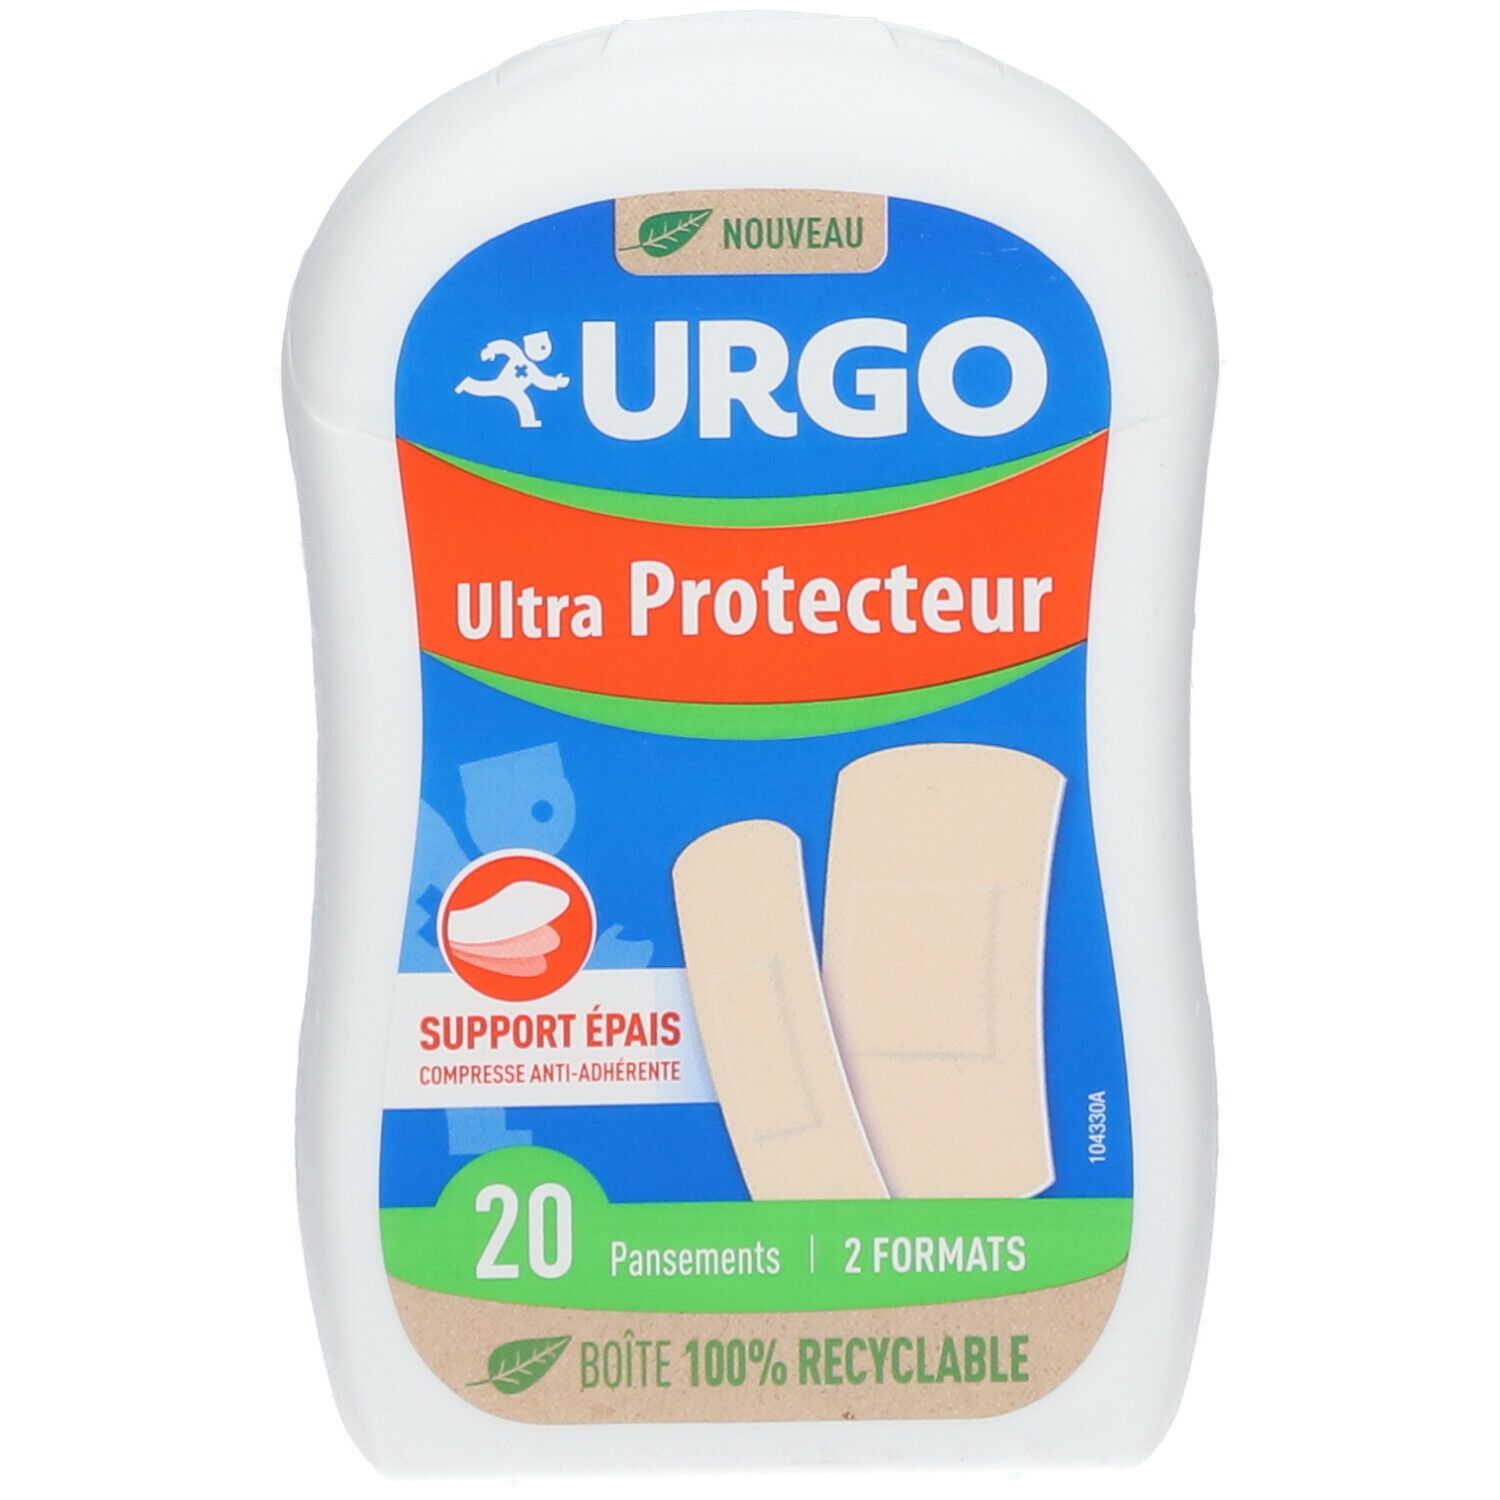 Urgo Ultra Protecteur Pansement